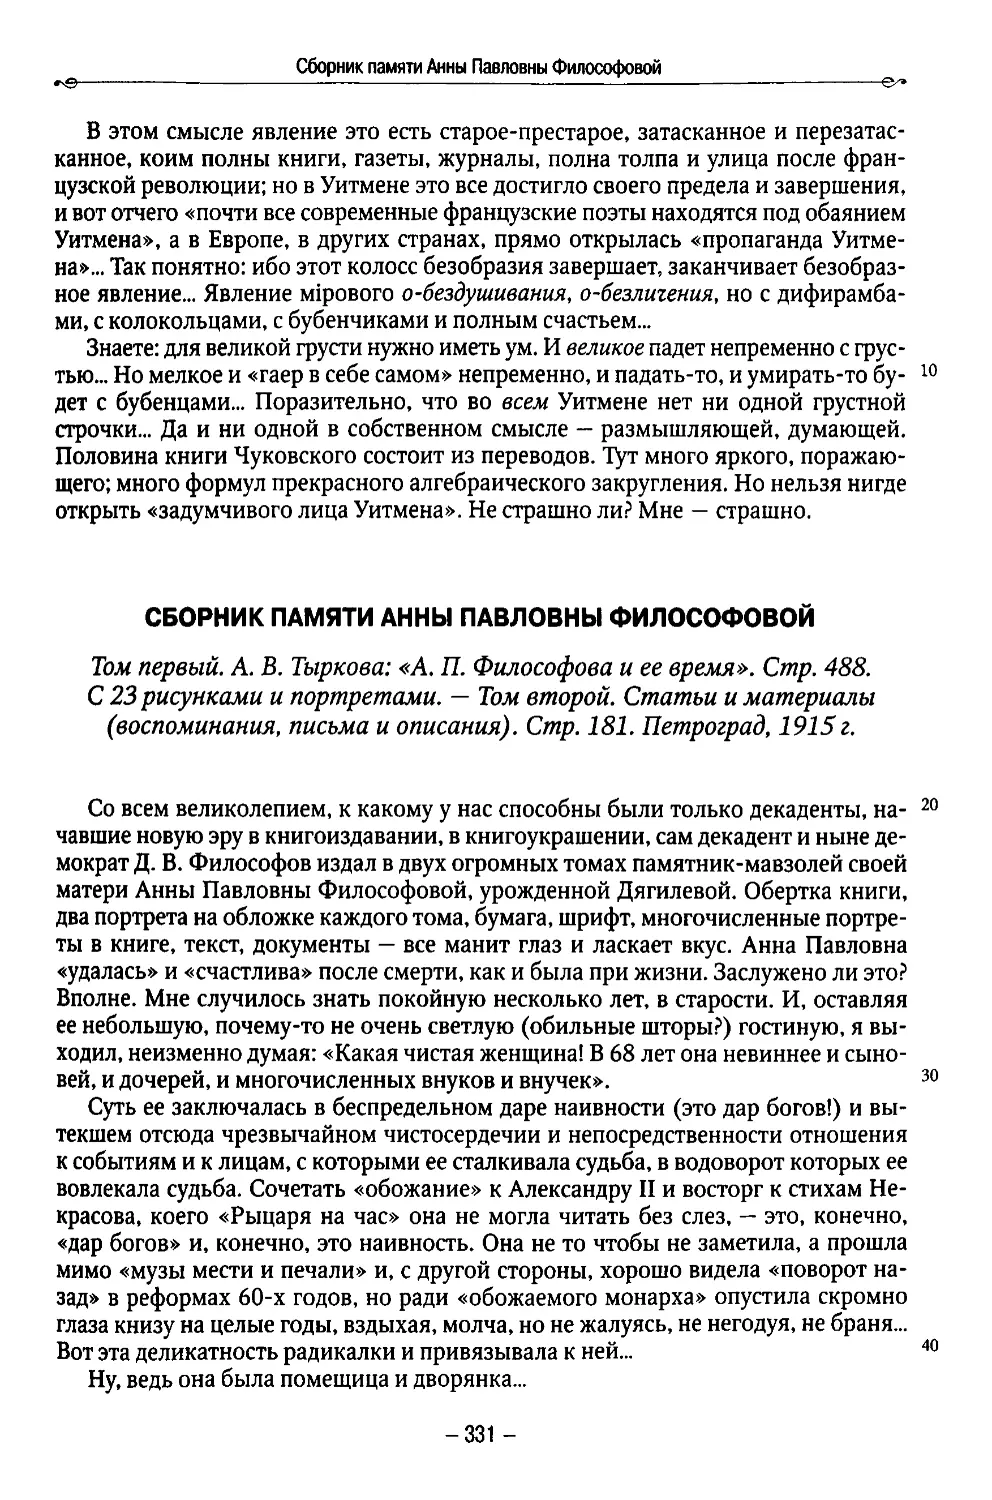 Сборник памяти Анны Павловны Философовой. Петроград, 1915 г. 3